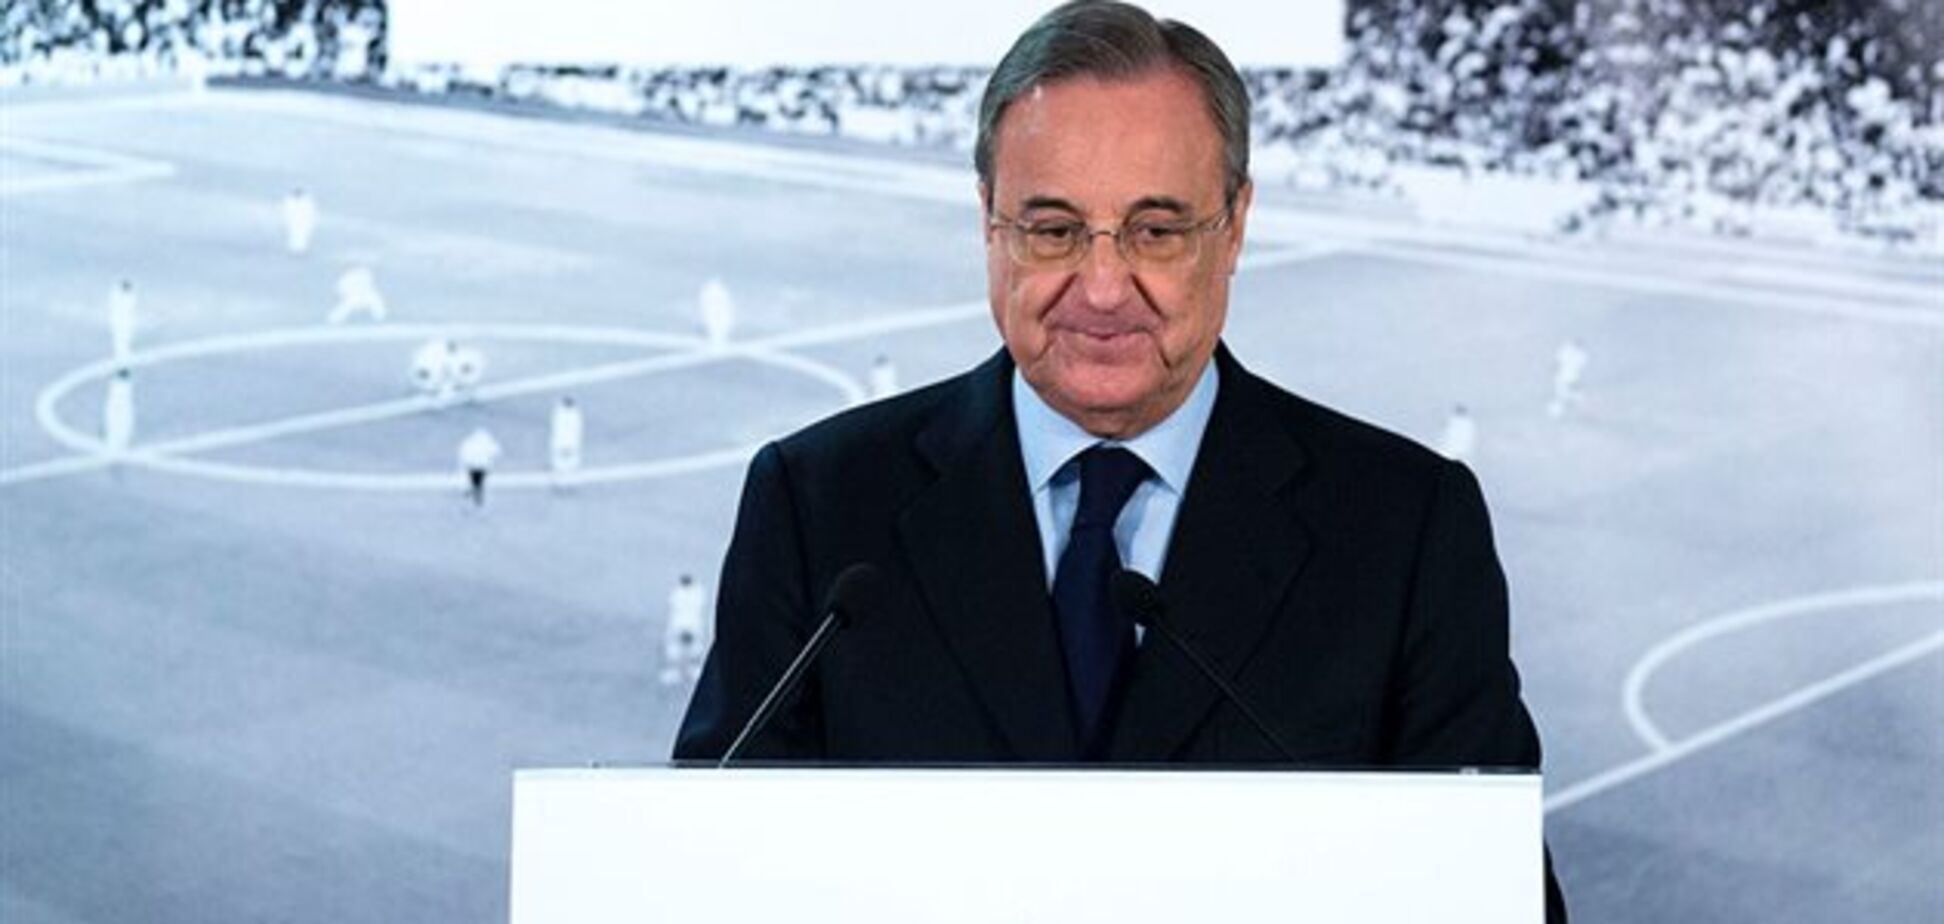 Подстава года: 'Барселона' серьезно 'обломала' президента 'Реала'